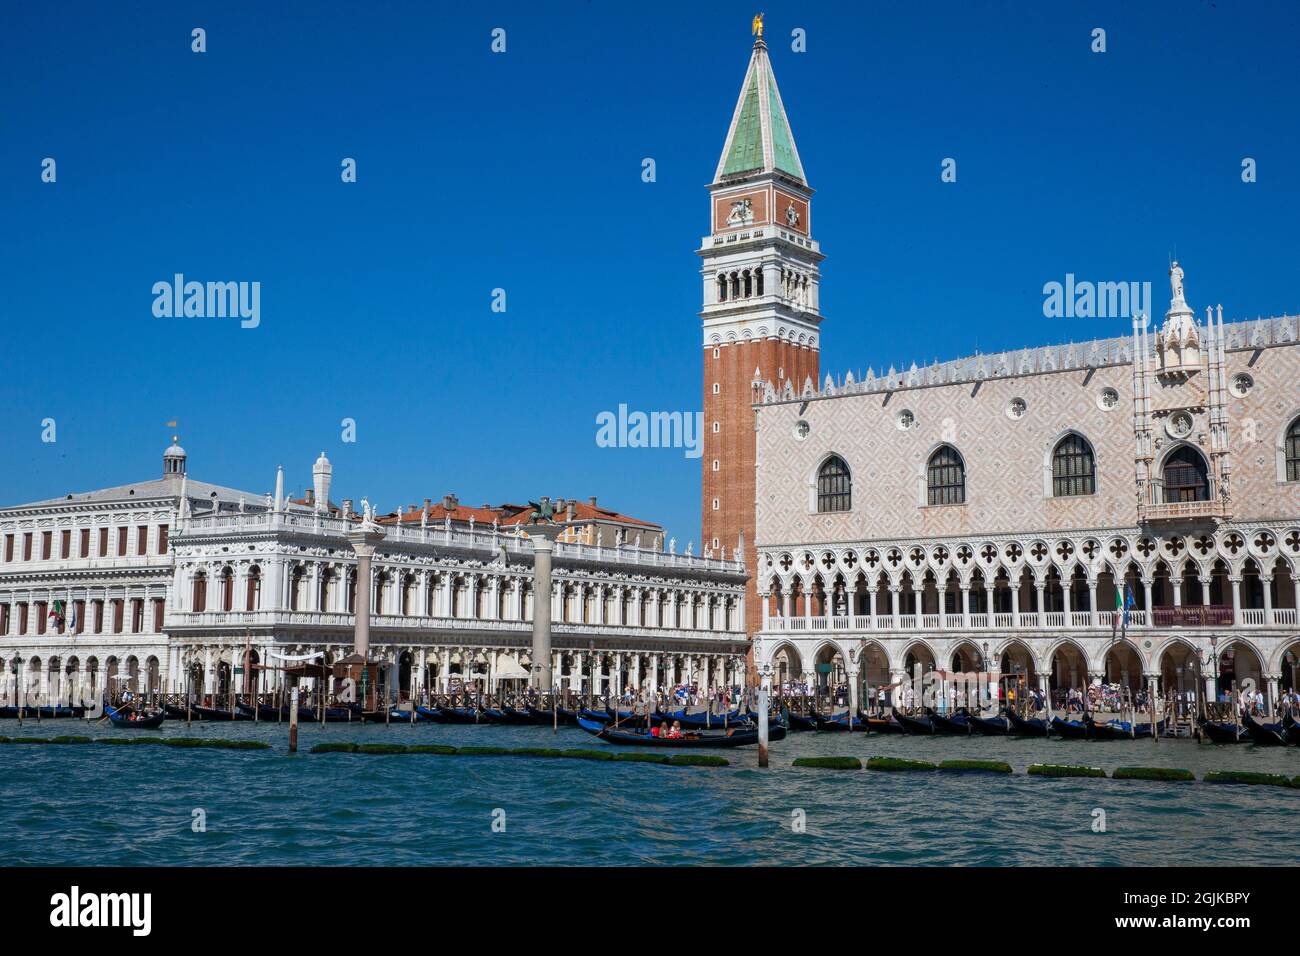 Blick auf den Markusplatz von der anderen Seite der Lagune in Venedig. Napooleon bezeichnete ihn als "den Salon Europas". Stockfoto